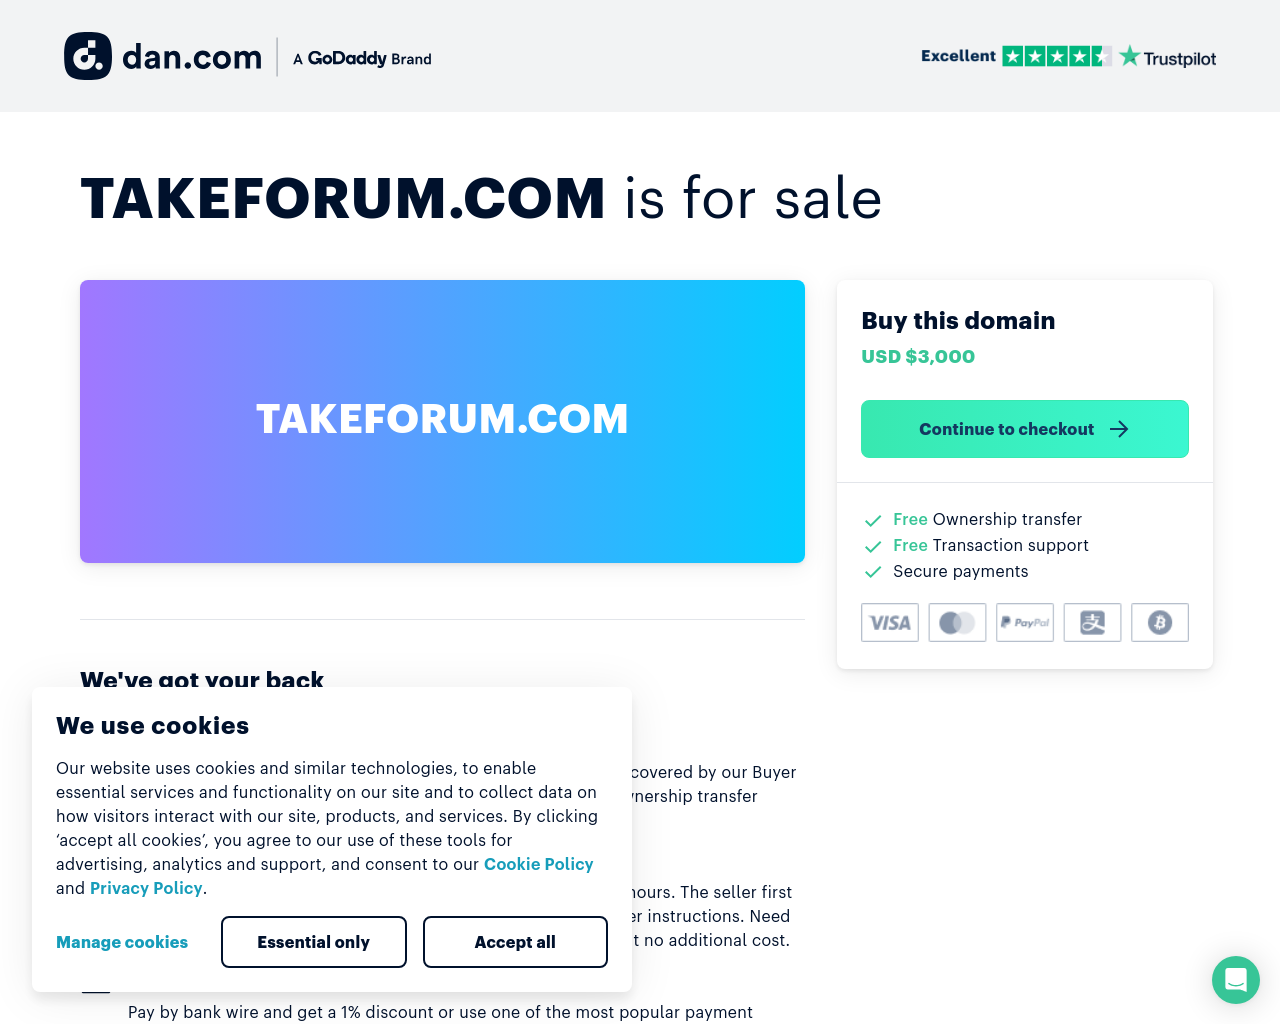 takeforum.com